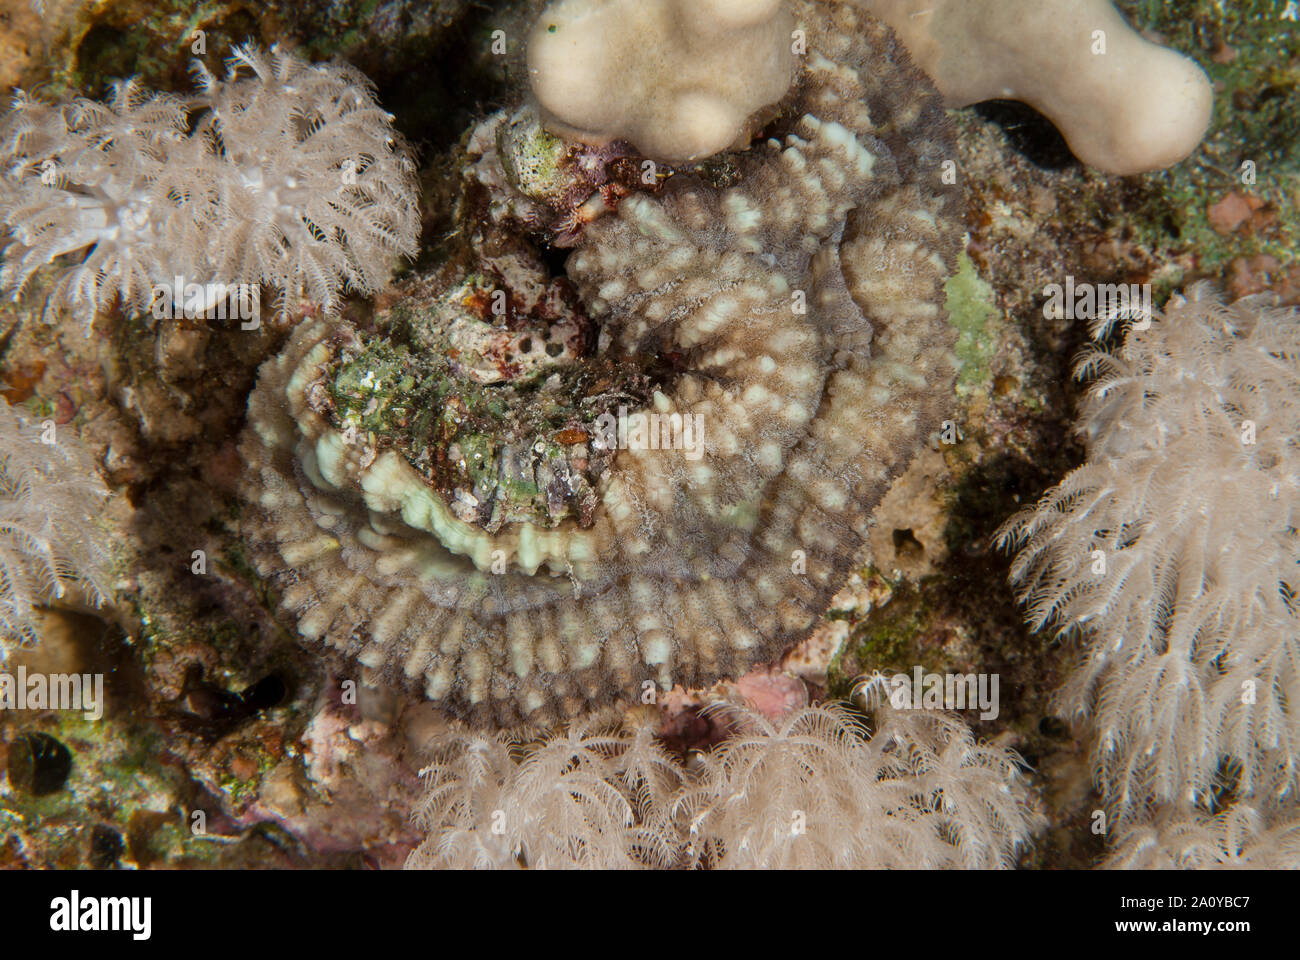 Lobato corallo cactus o radice del cervello di corallo, Lobophyllia sp., Mussidae, Sharm el-Sheikh, Mar Rosso, Egitto Foto Stock